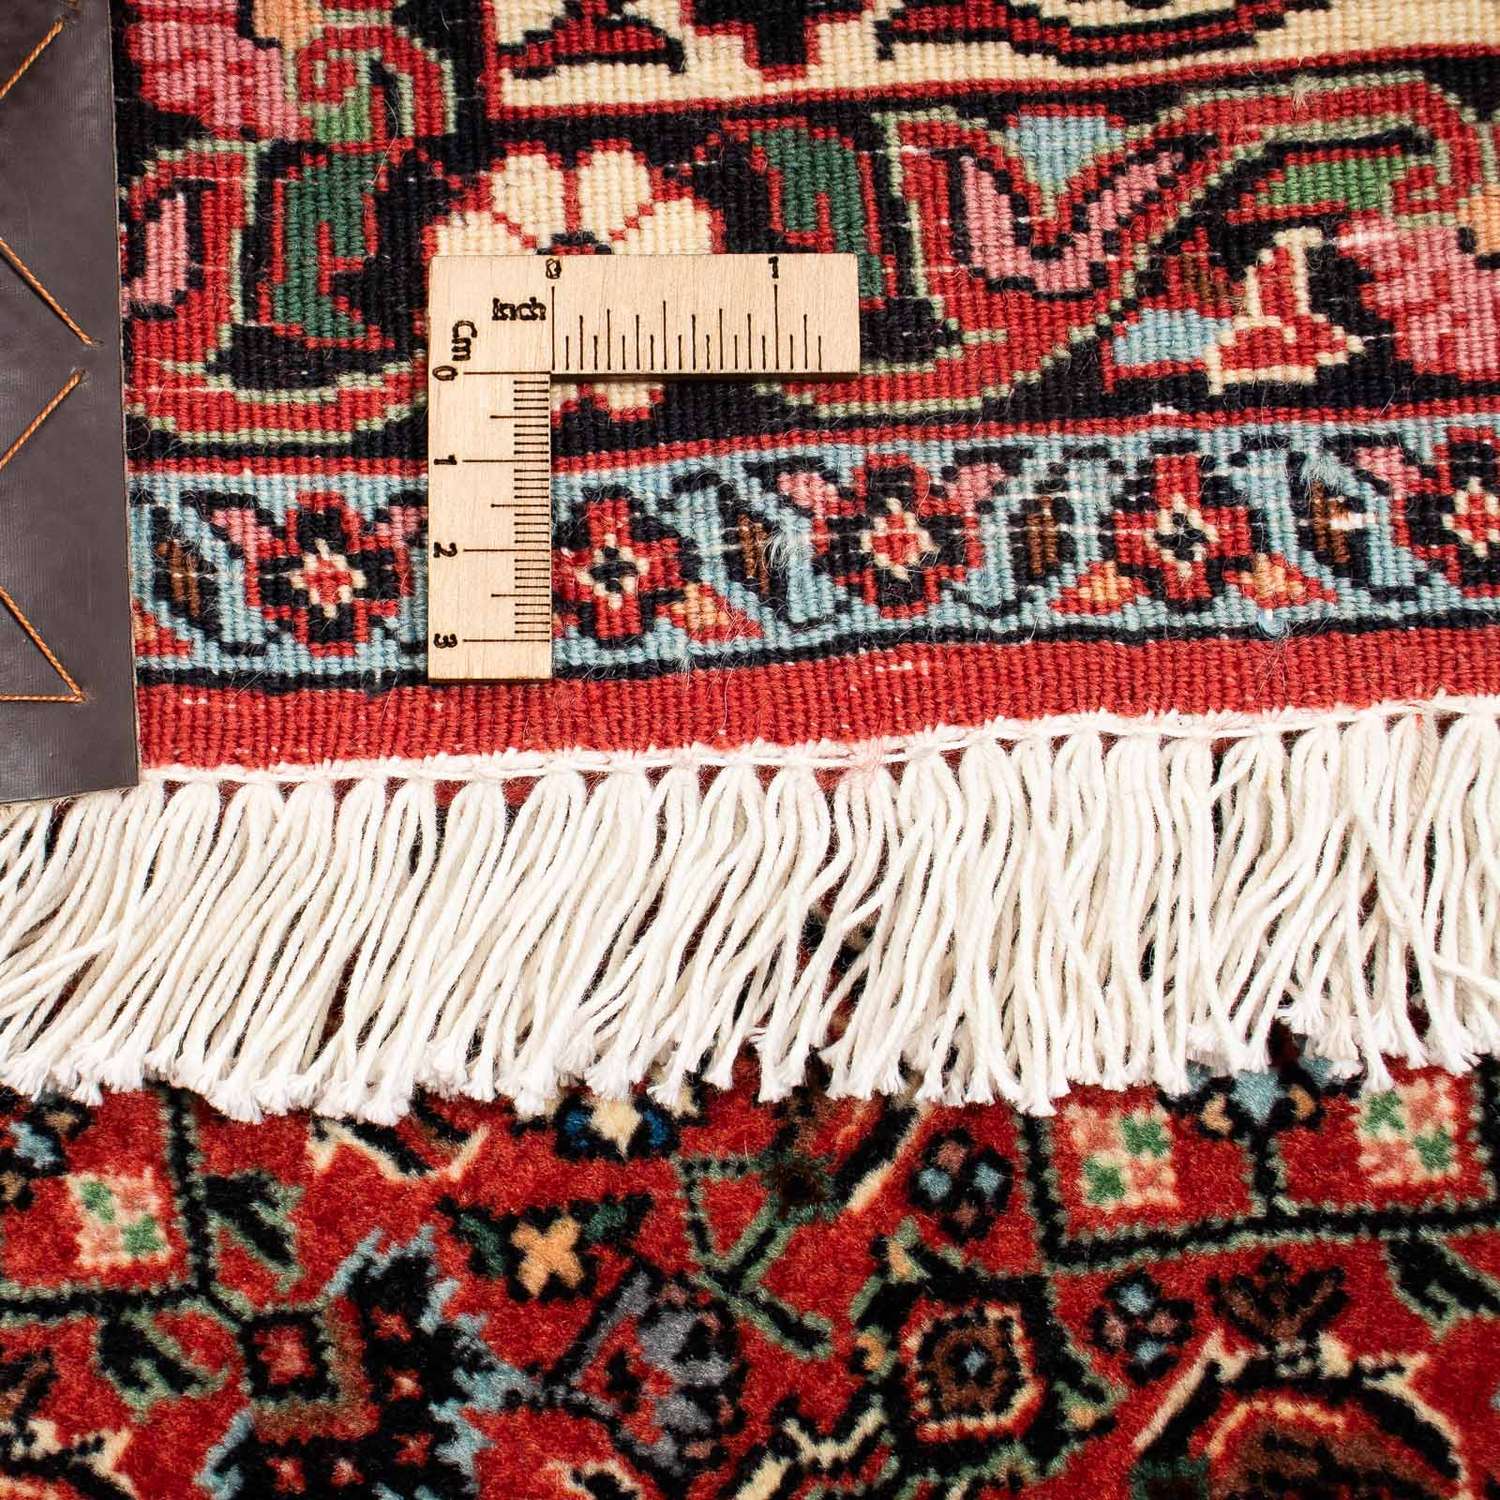 Perzisch tapijt - Bijar vierkant  - 203 x 197 cm - donkerrood